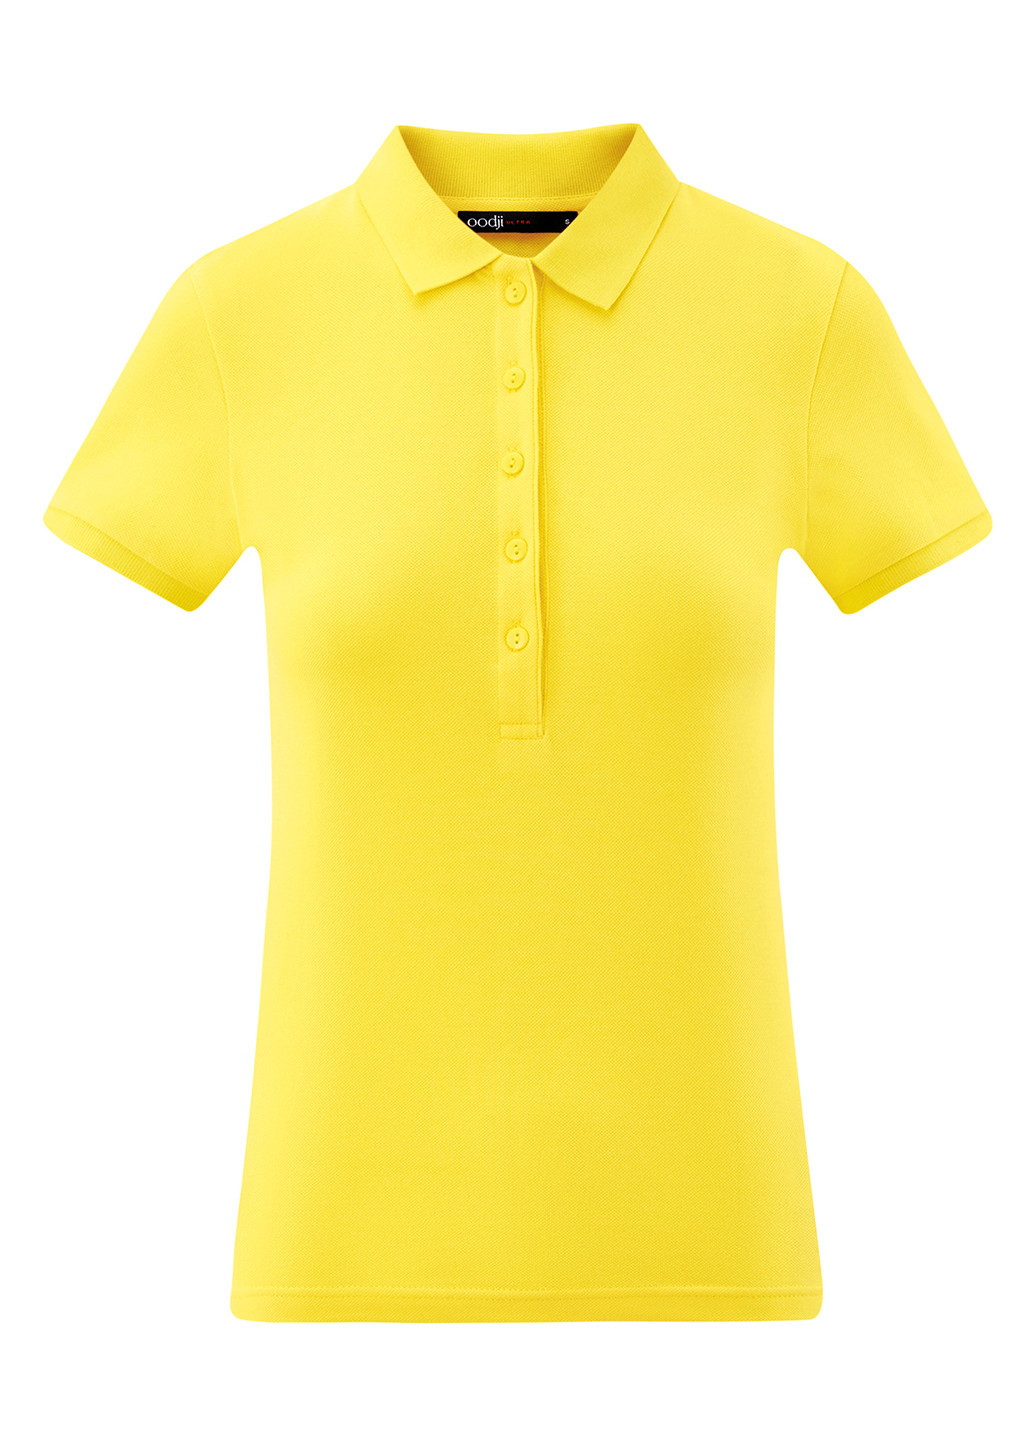 Желтая женская футболка-поло Oodji однотонная